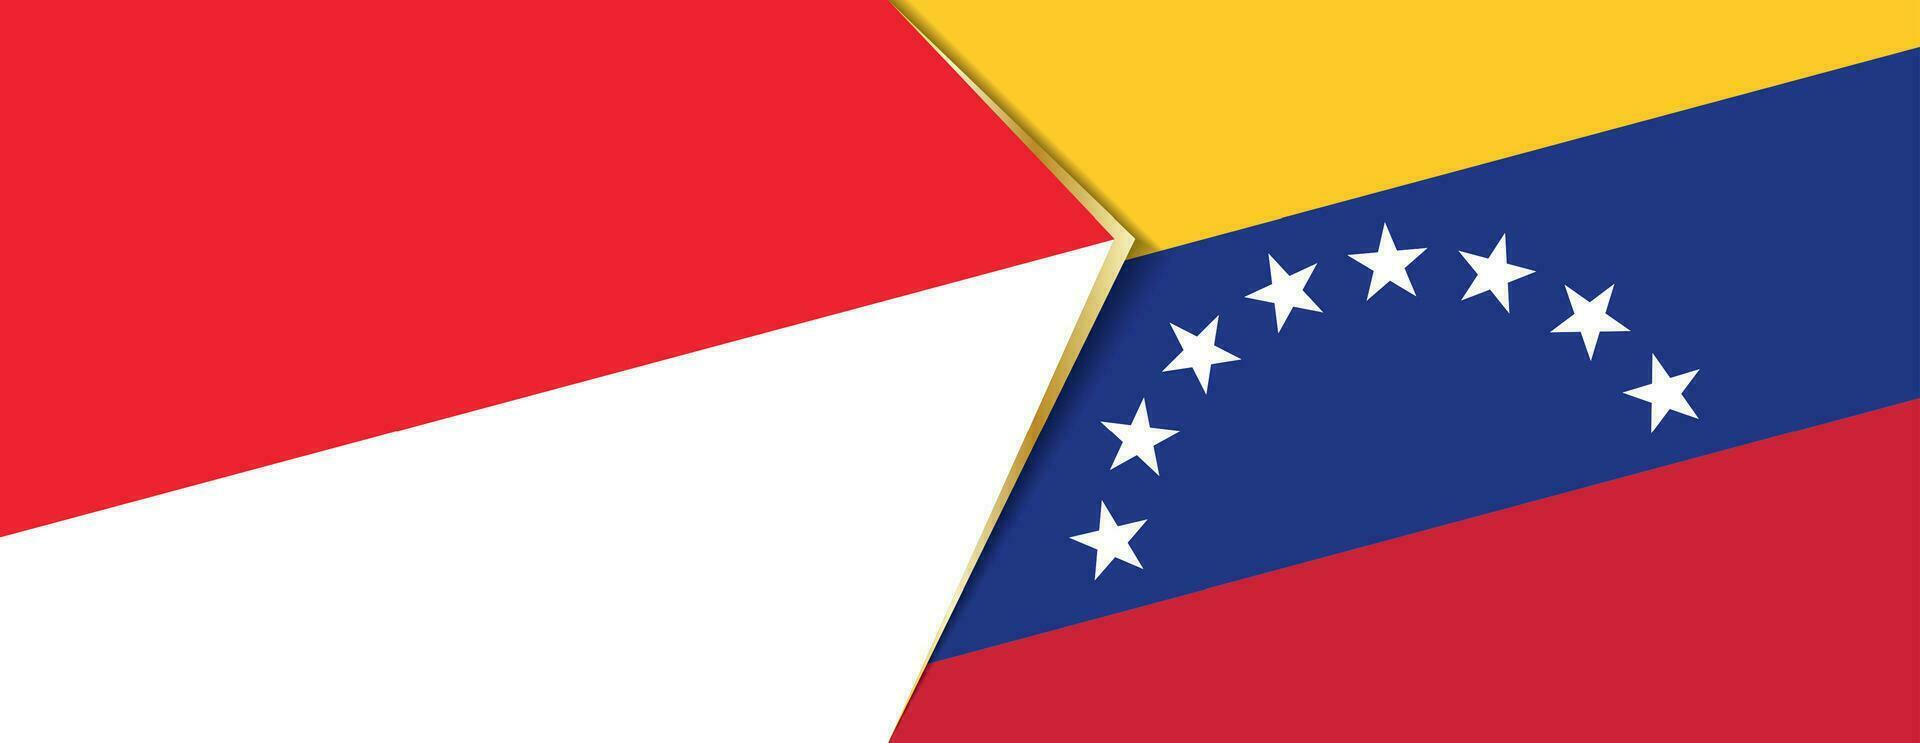 Indonesia e Venezuela bandiere, Due vettore bandiere.